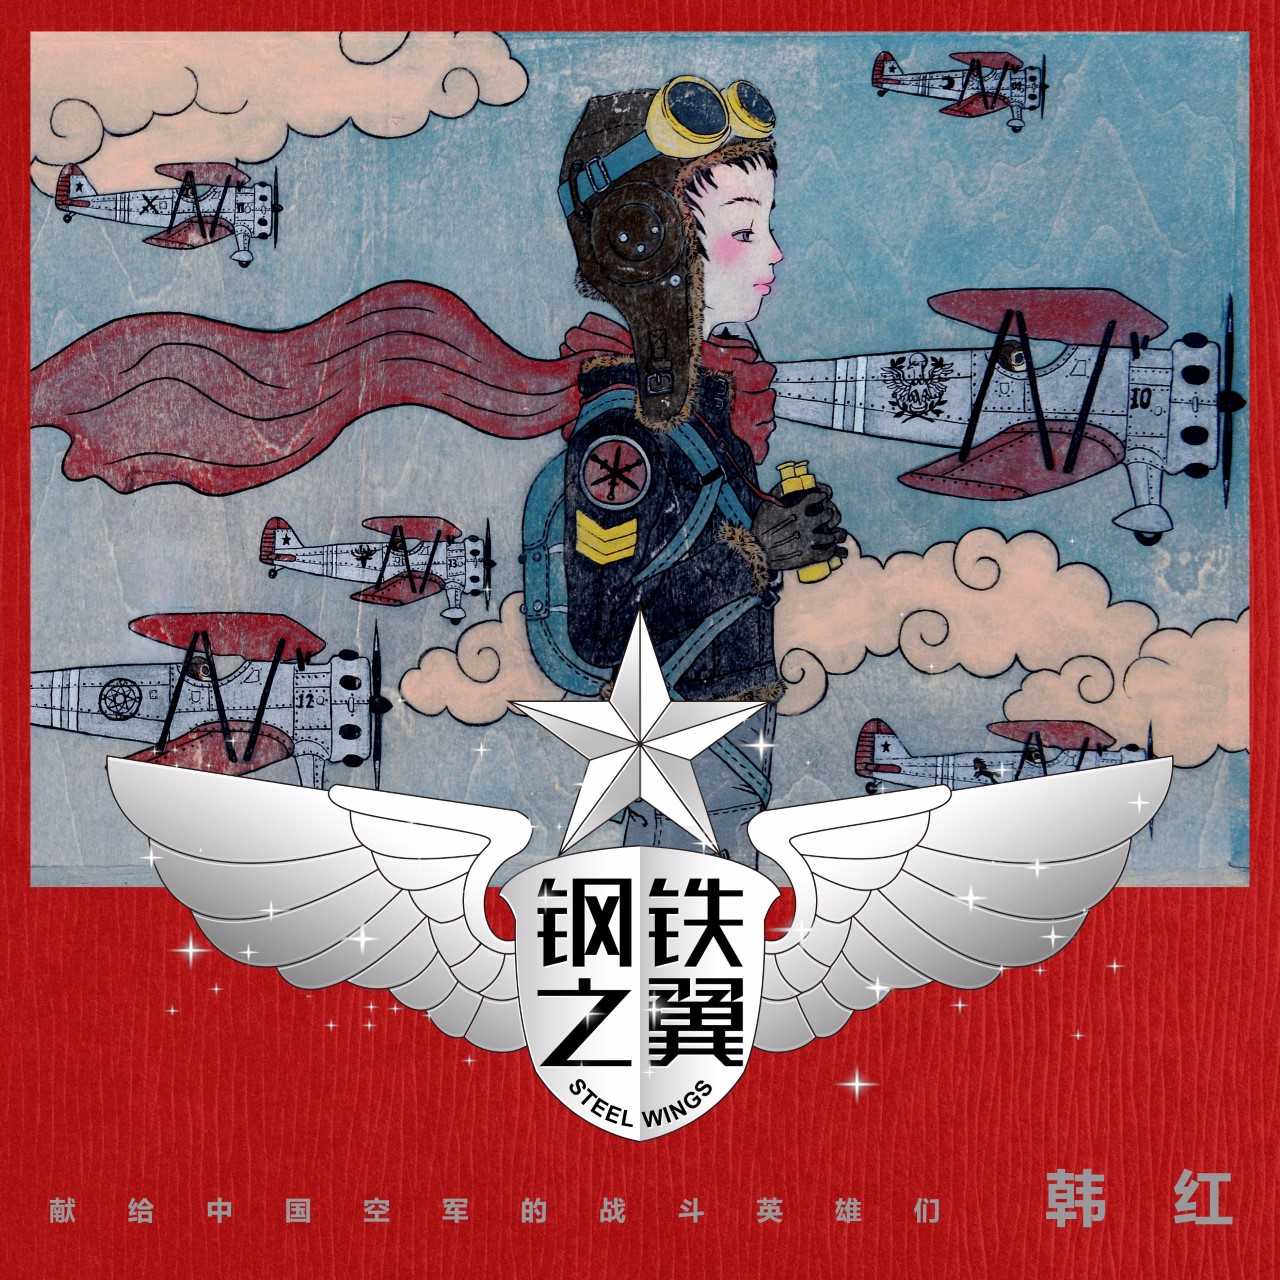 韓紅《鋼鐵之翼》上線 獻給中國空軍的戰鬥英雄們 娛樂 第1張